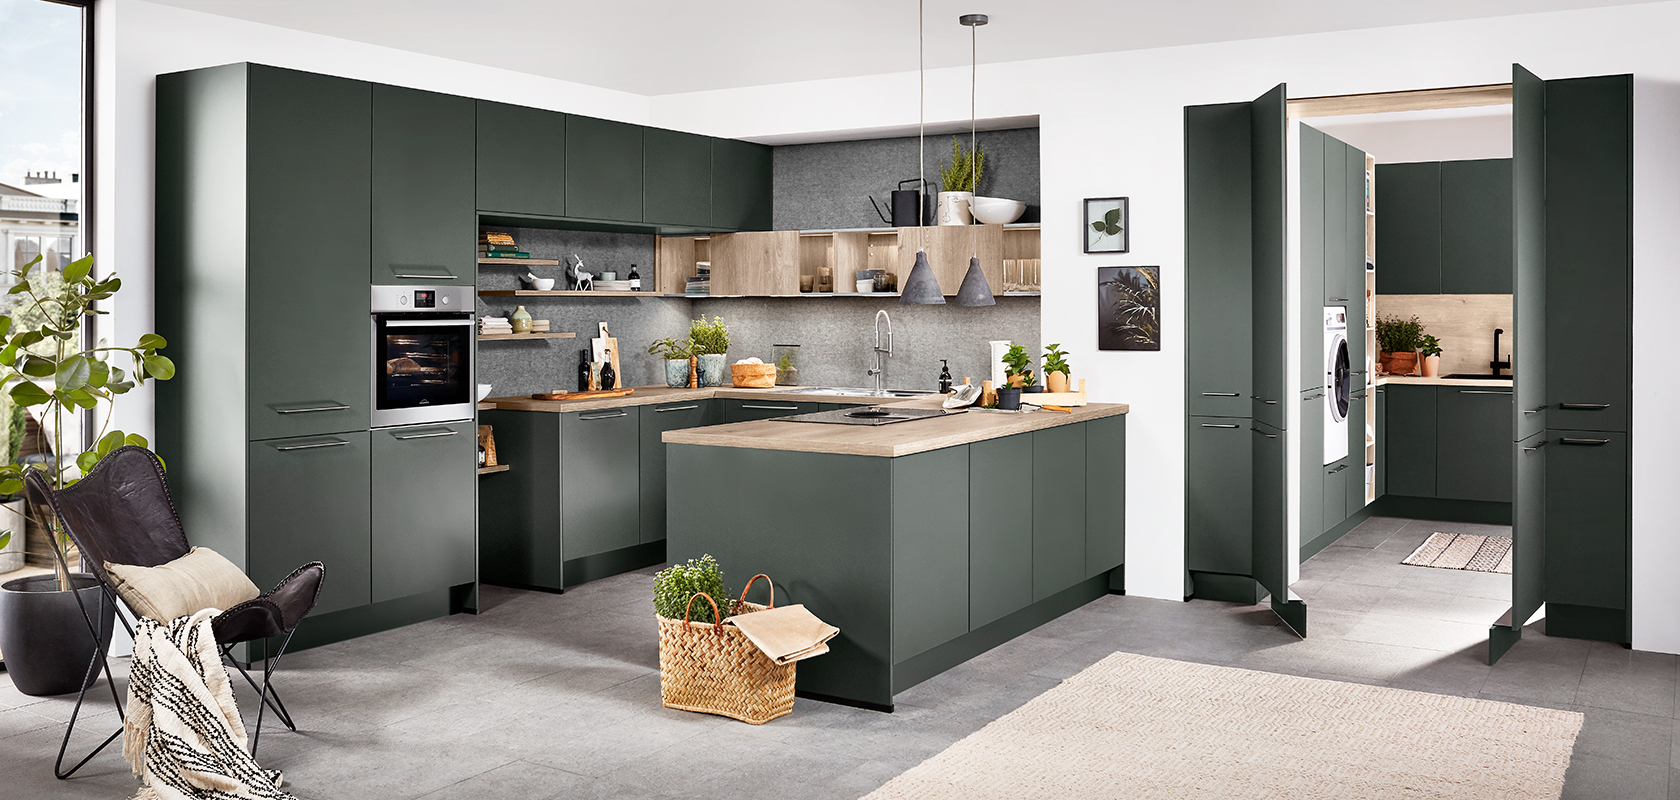 Moderní kuchyň s zelenými skříňkami, dřevěnými doplňky a nerezovými spotřebiči, s centrálním ostrovem a dobře osvětleným, prostorným designem pro moderní domov.